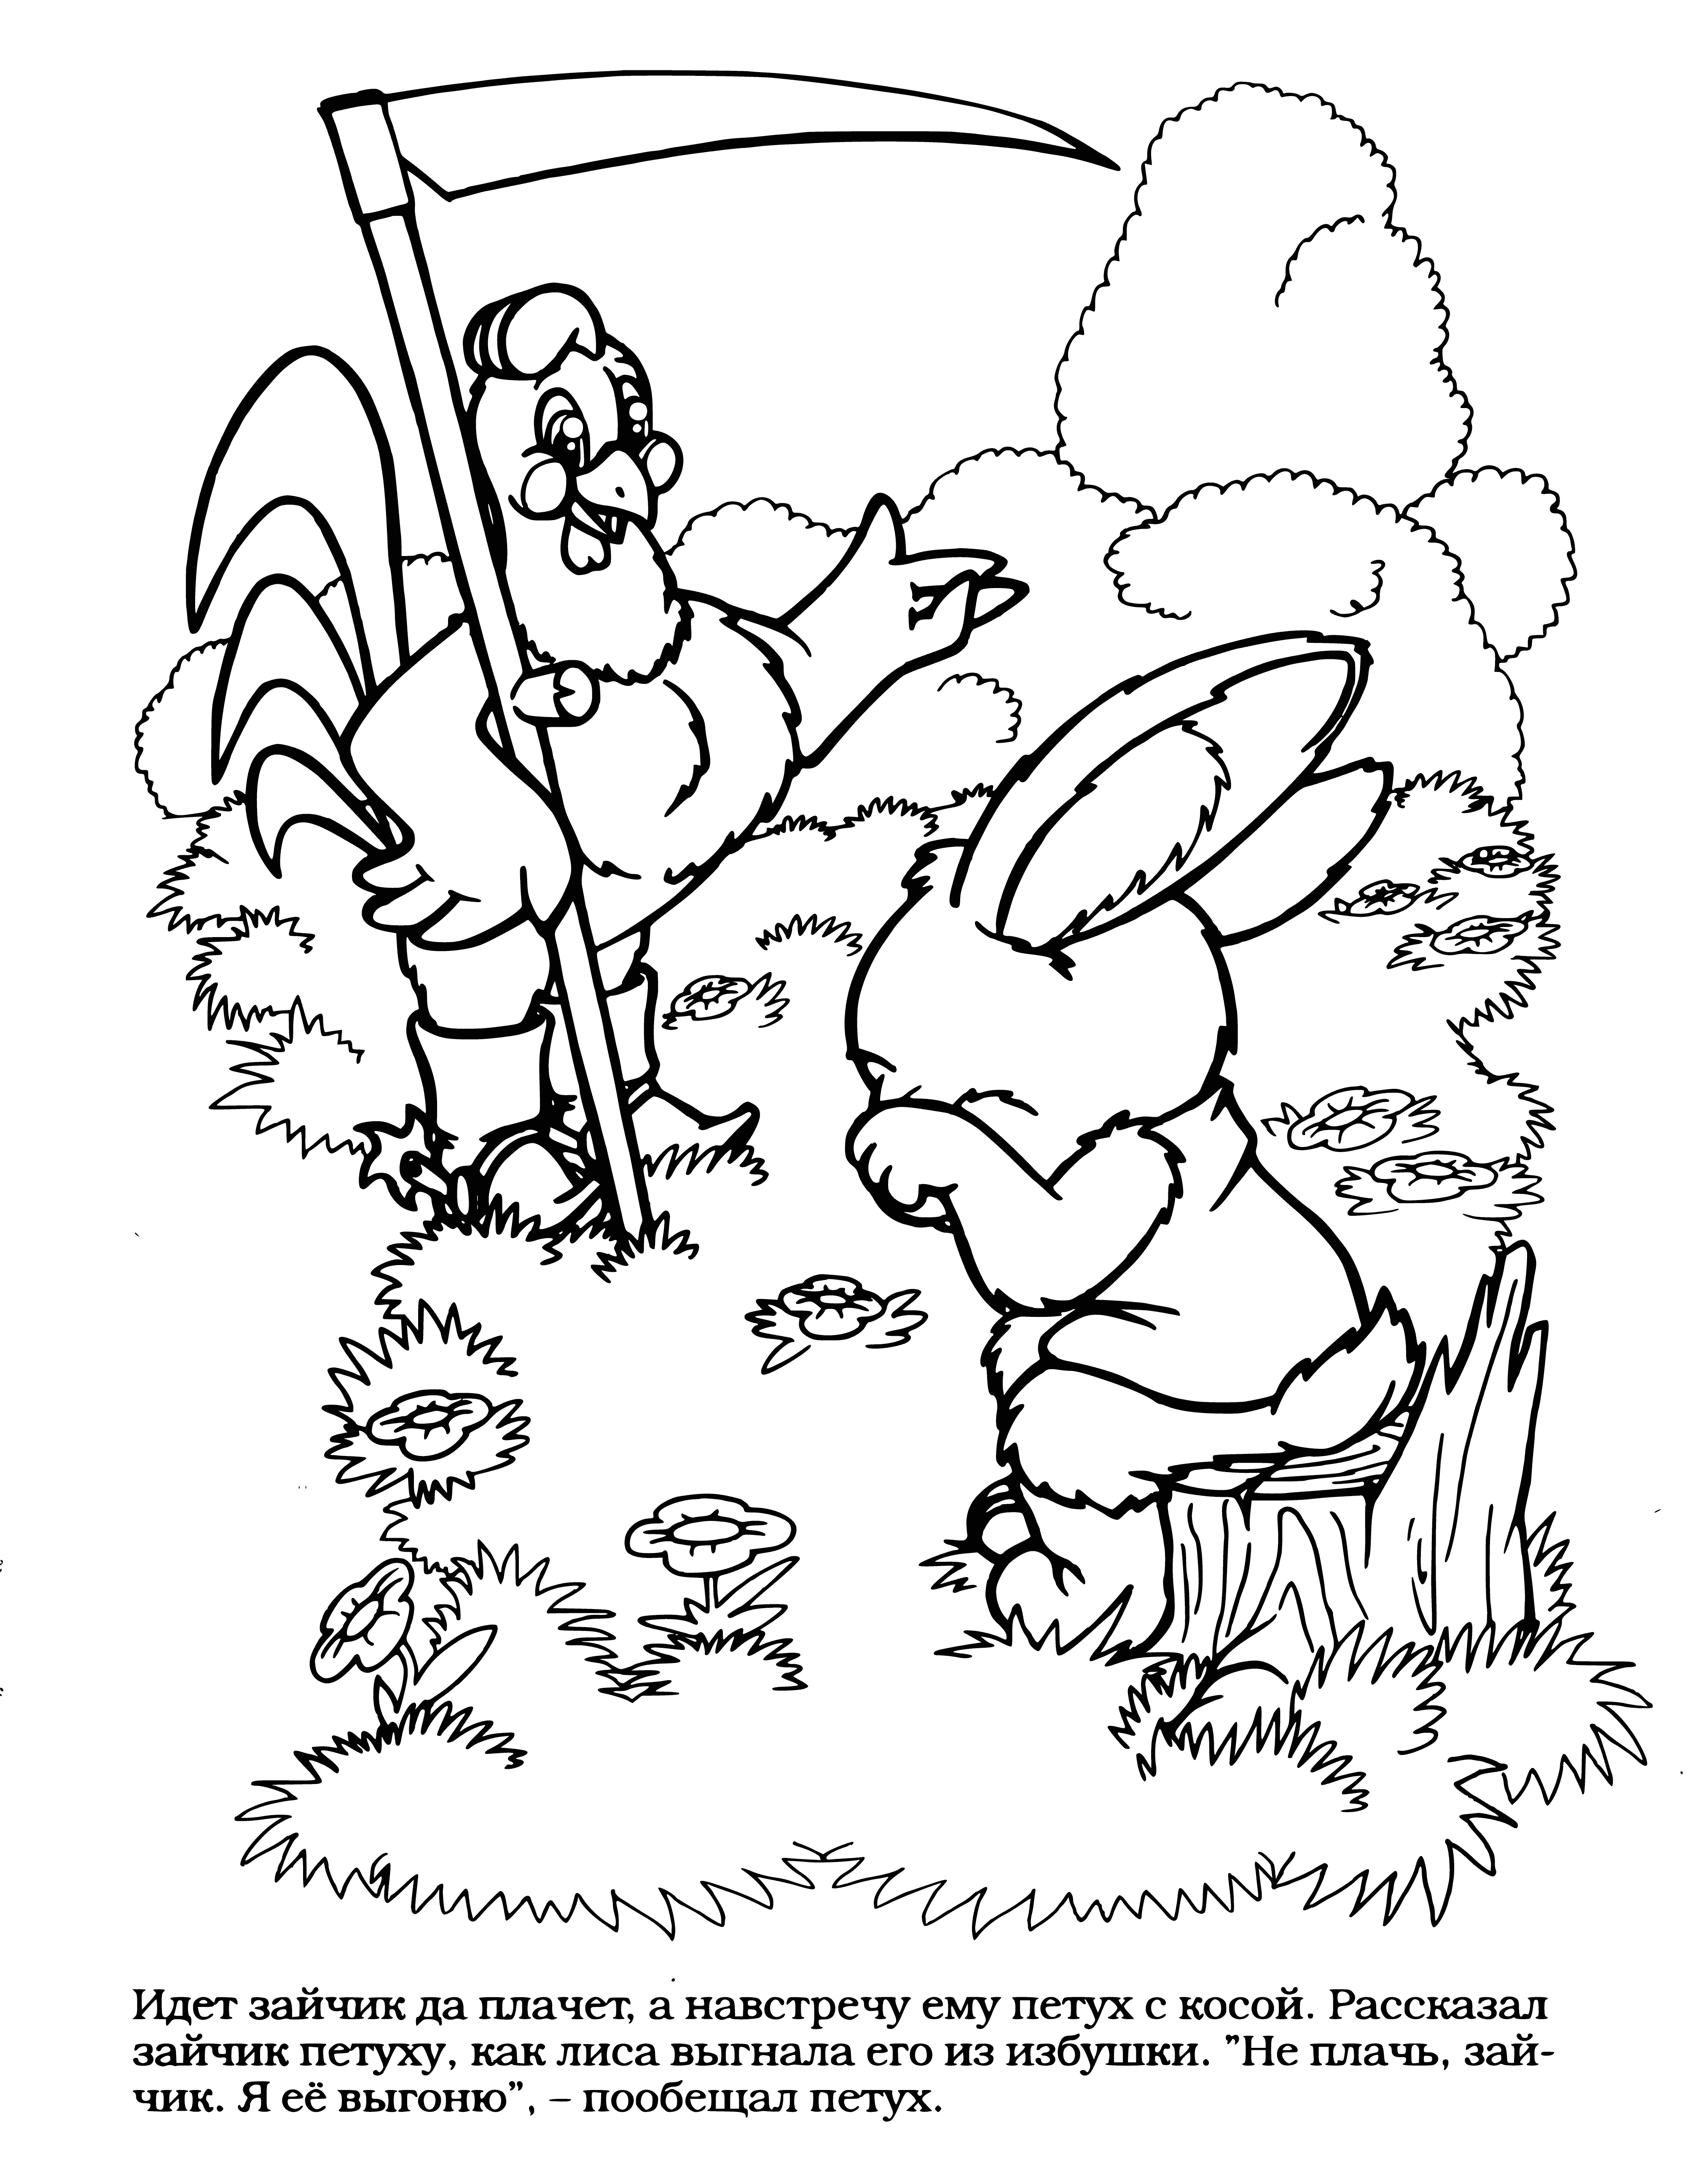 Bunny met a cockerel coloring page